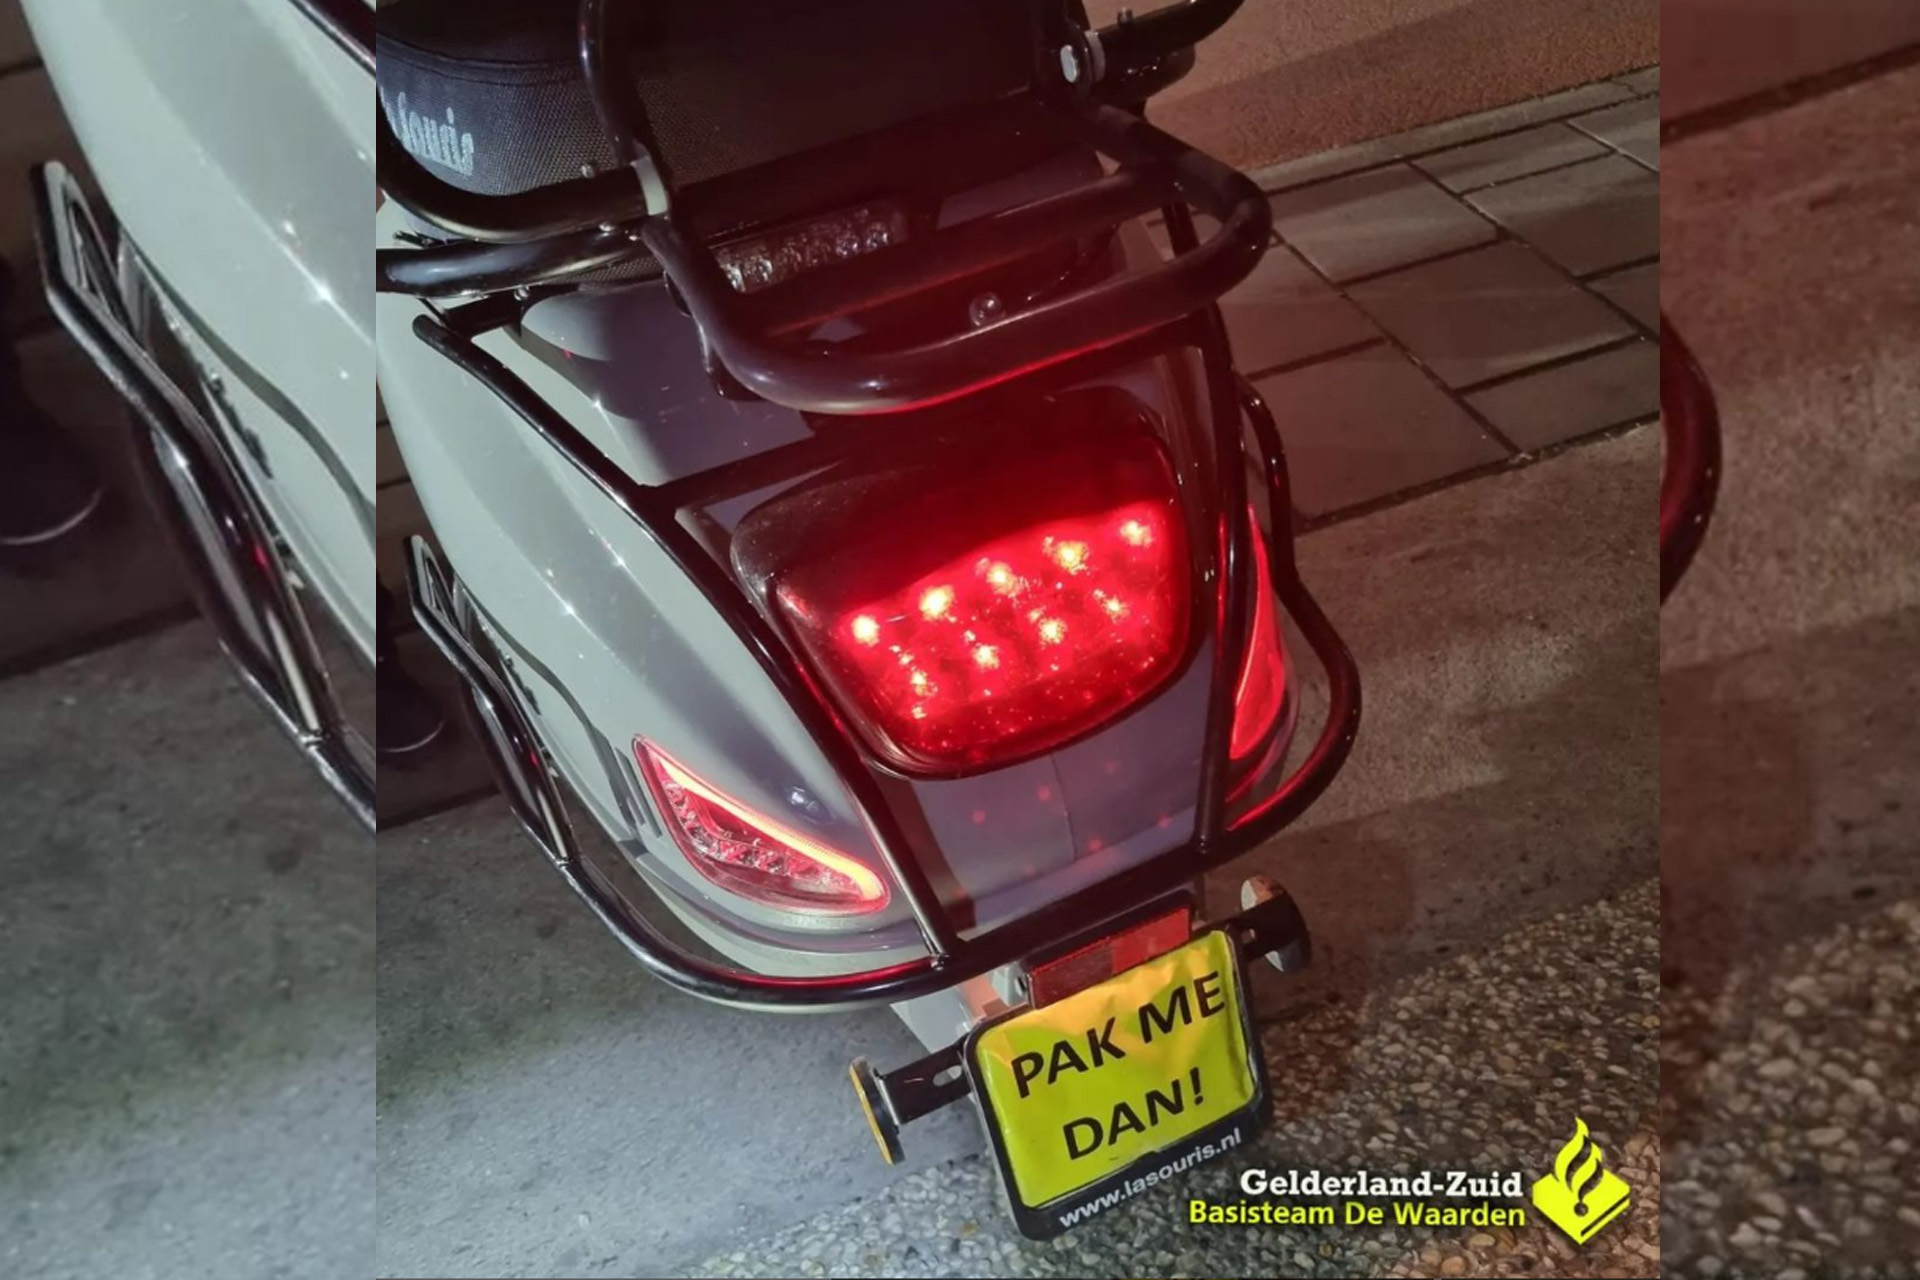 Politie geeft gehoor aan verzoek van scooterrijder met opvallend kenteken ‘Pak Me Dan!